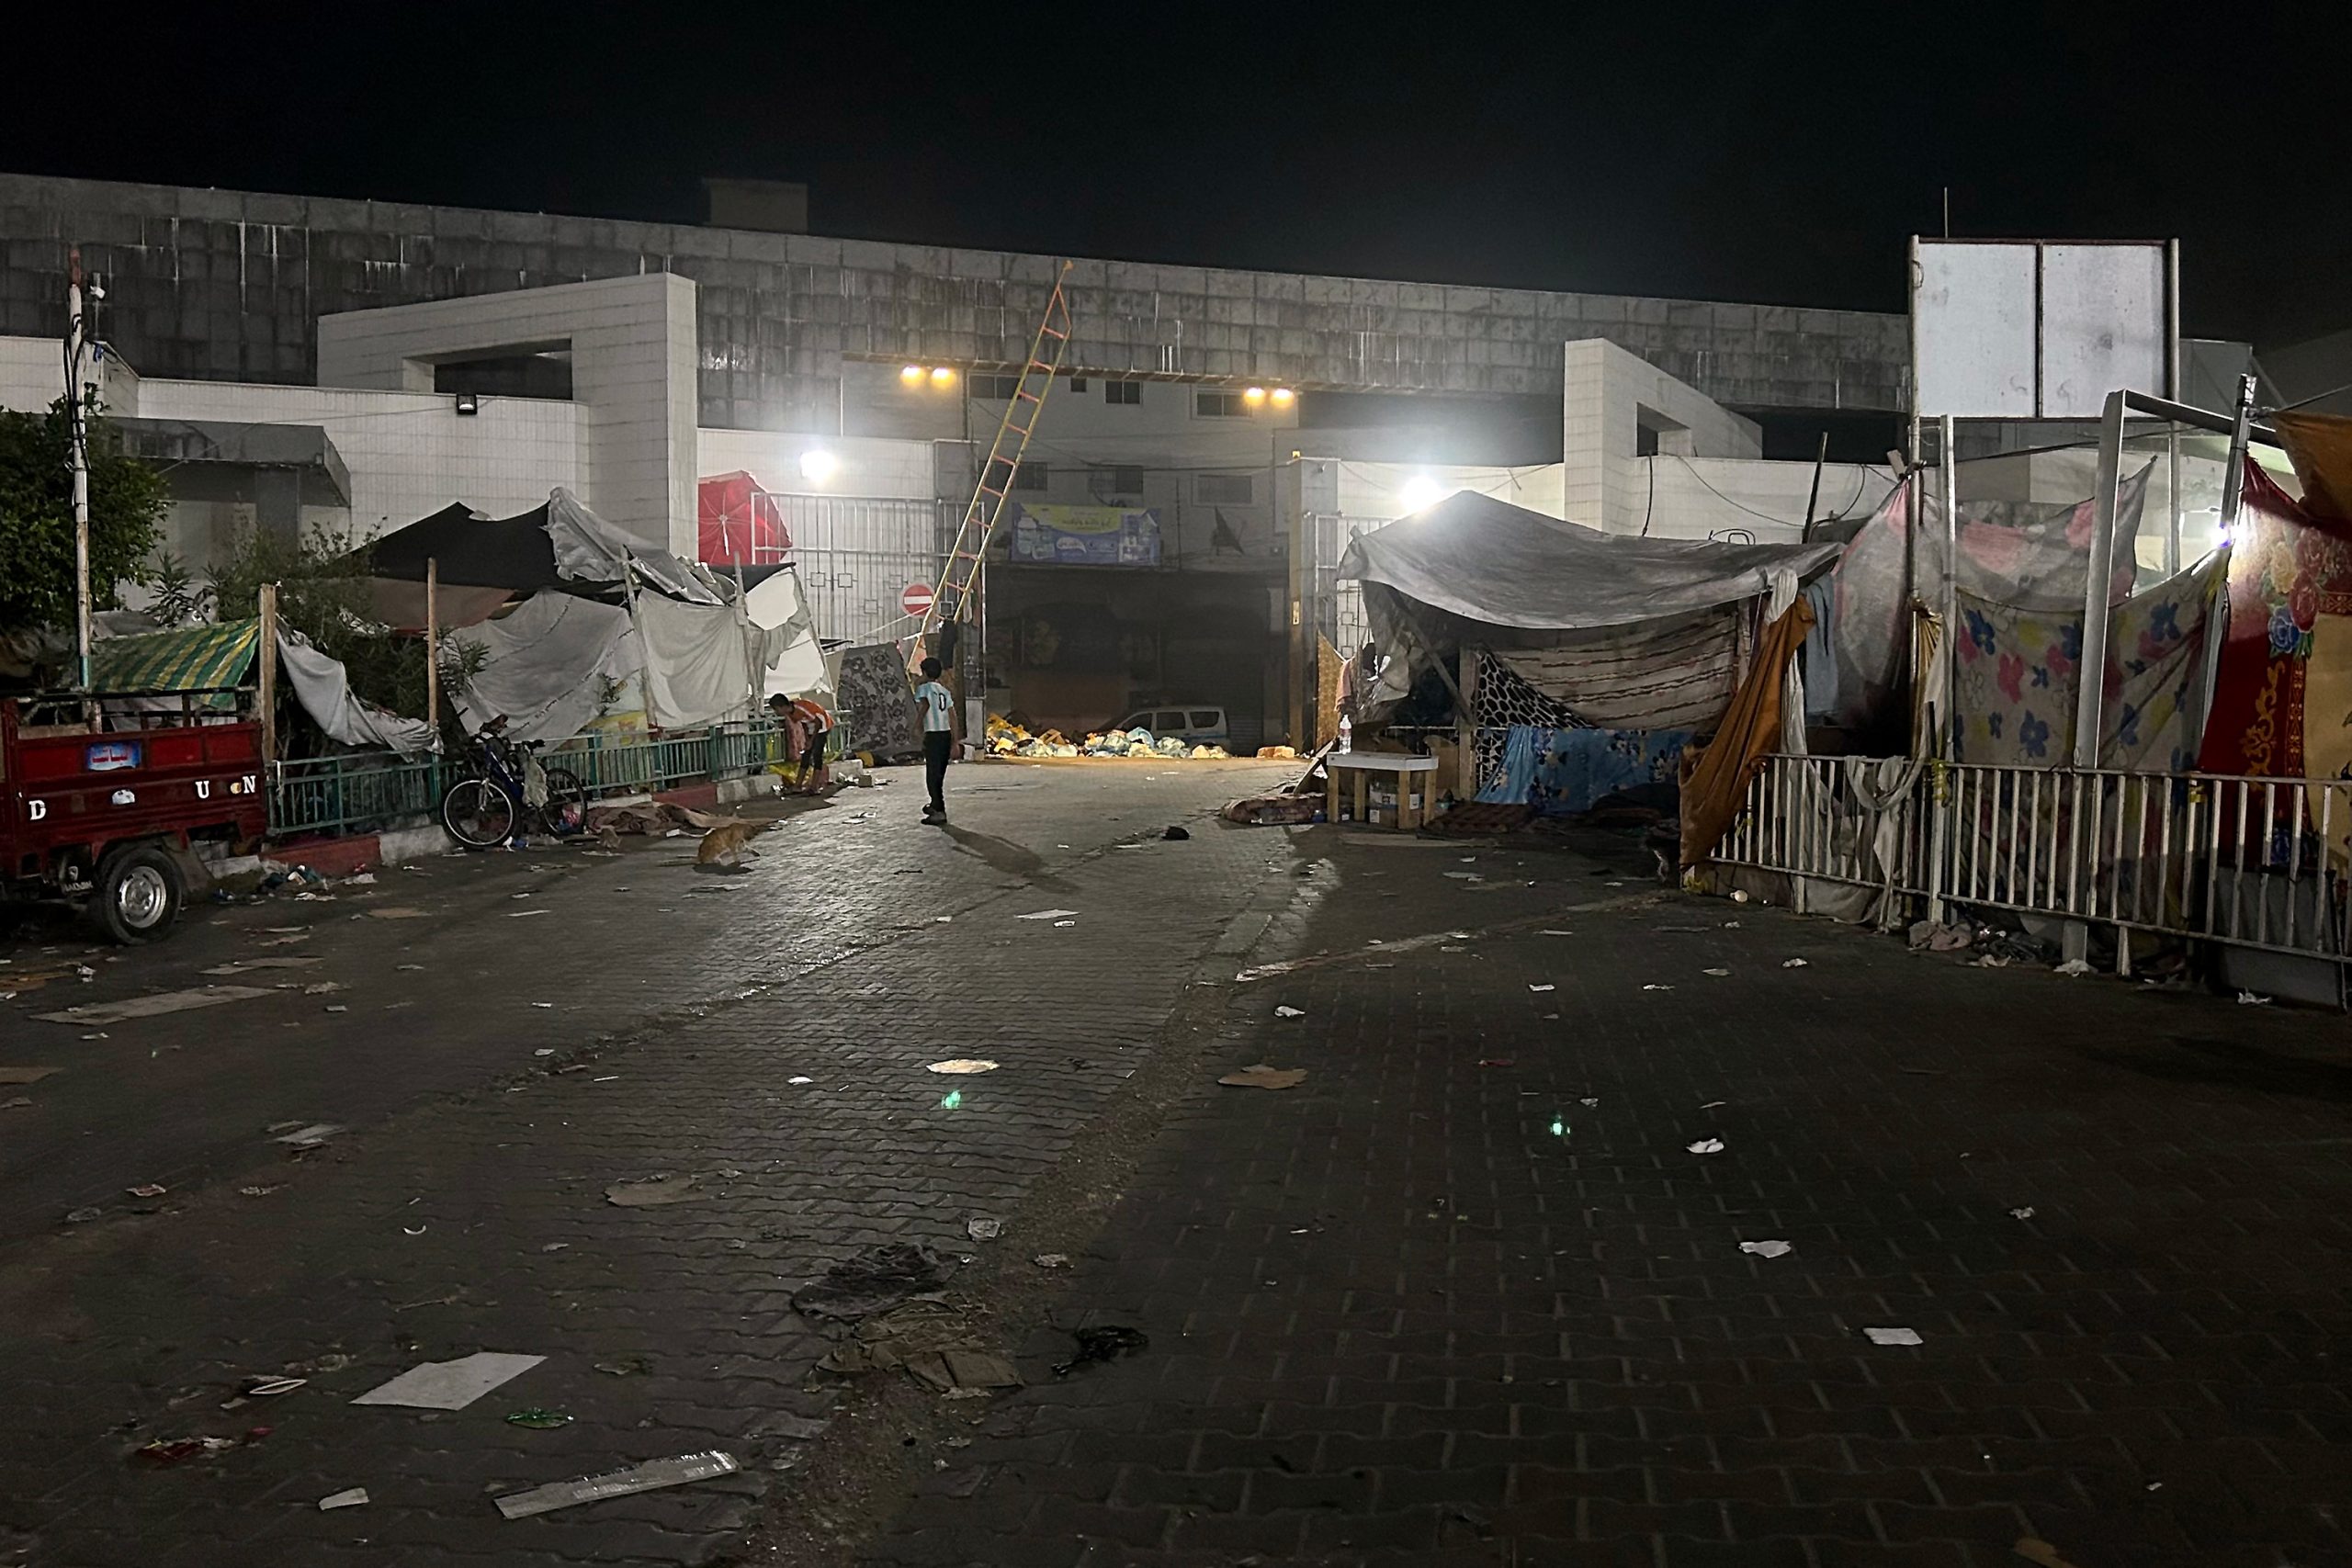 Médio Oriente/Guerra Hamas-Israel: no hospital Al-Shifa, “há um elevado risco de crimes de guerra de ambos os lados”